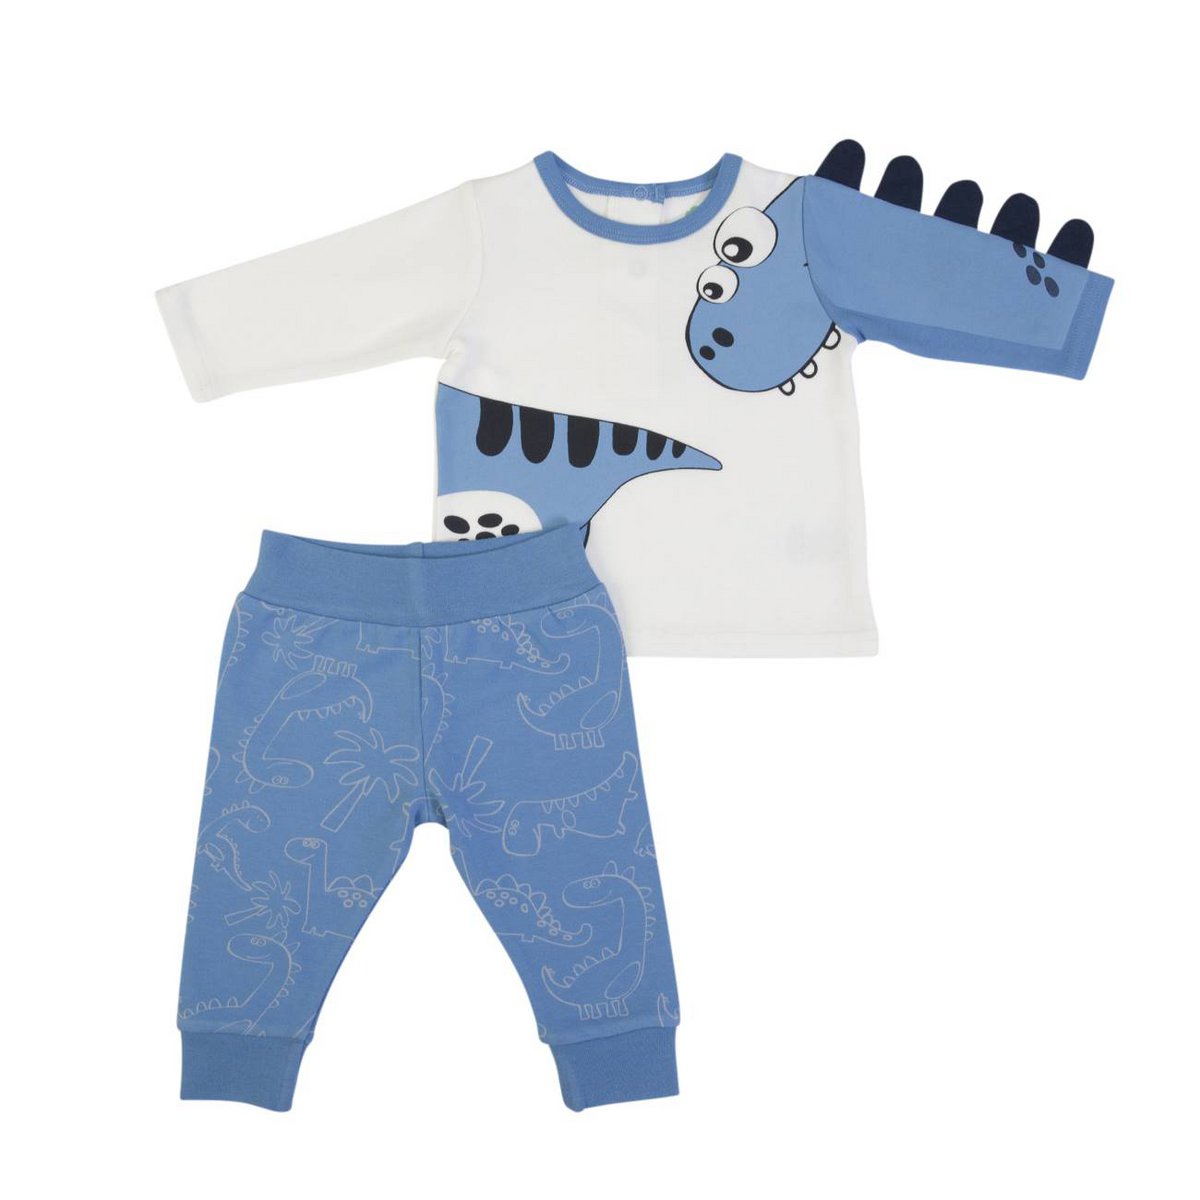 wortel is er Voorloper FS baby pyjama blauw/wit dino. - ILKYMA